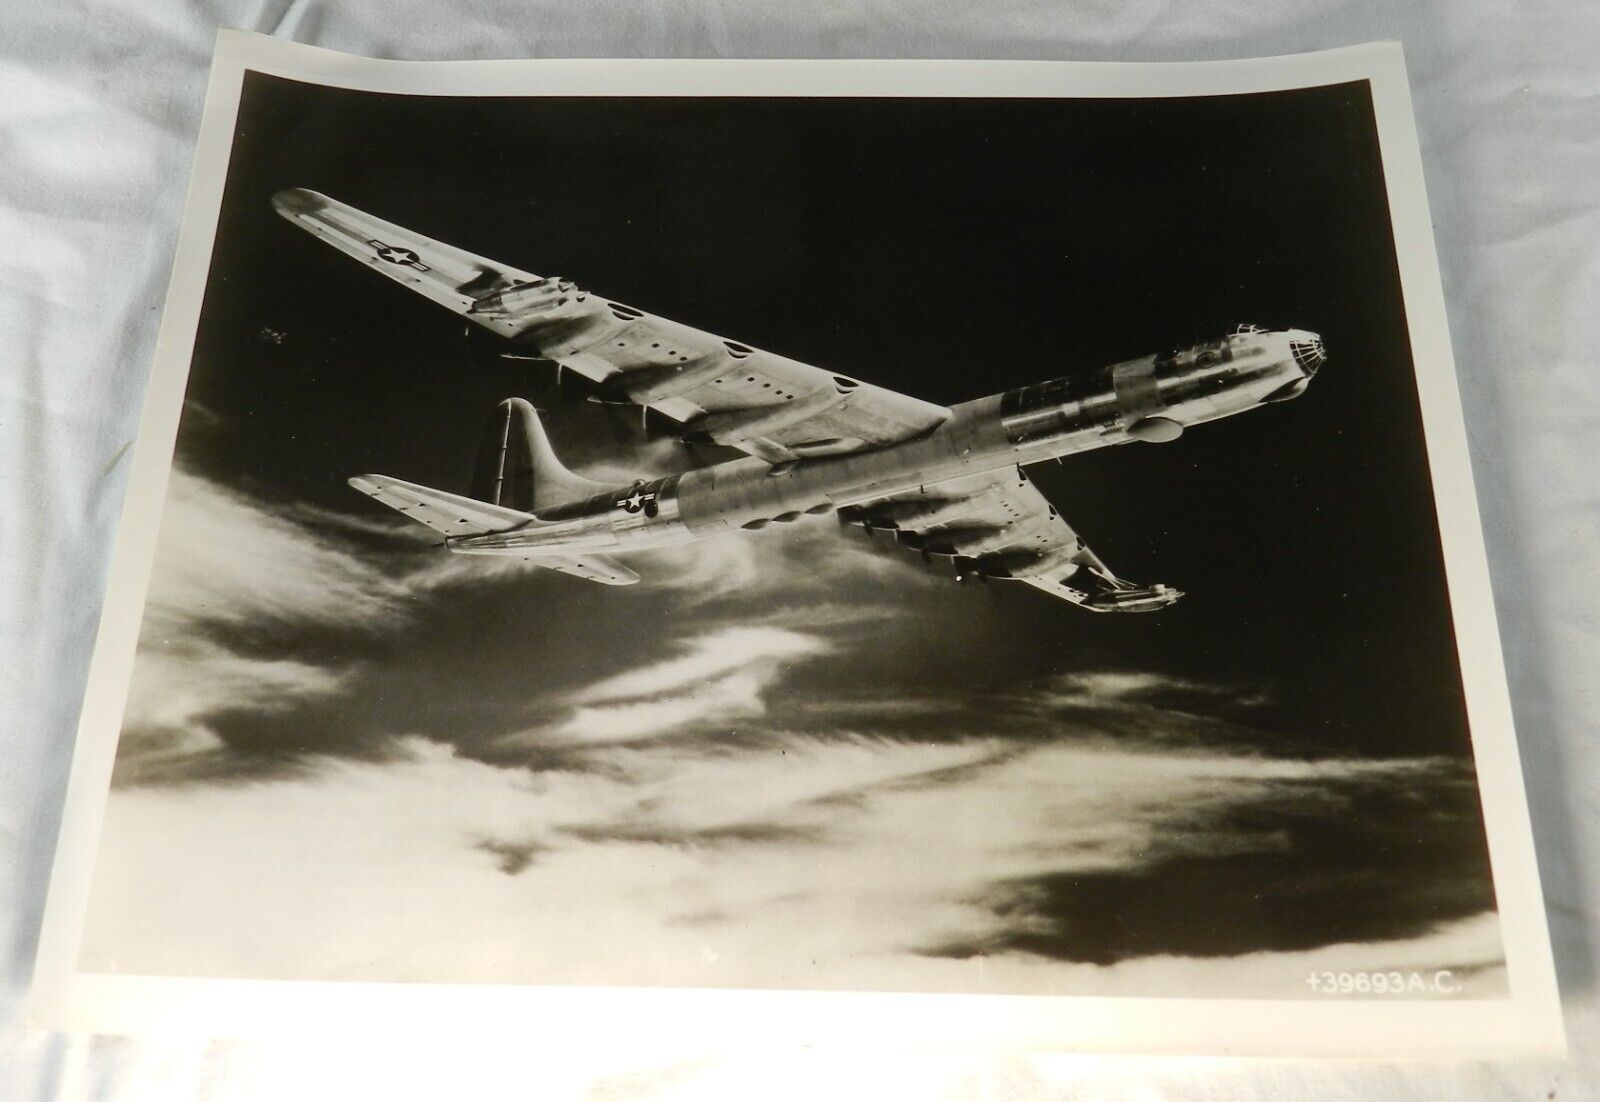 Vintage US Air Force Press Photo - Convair RB-36D Reconnaissance Bomber